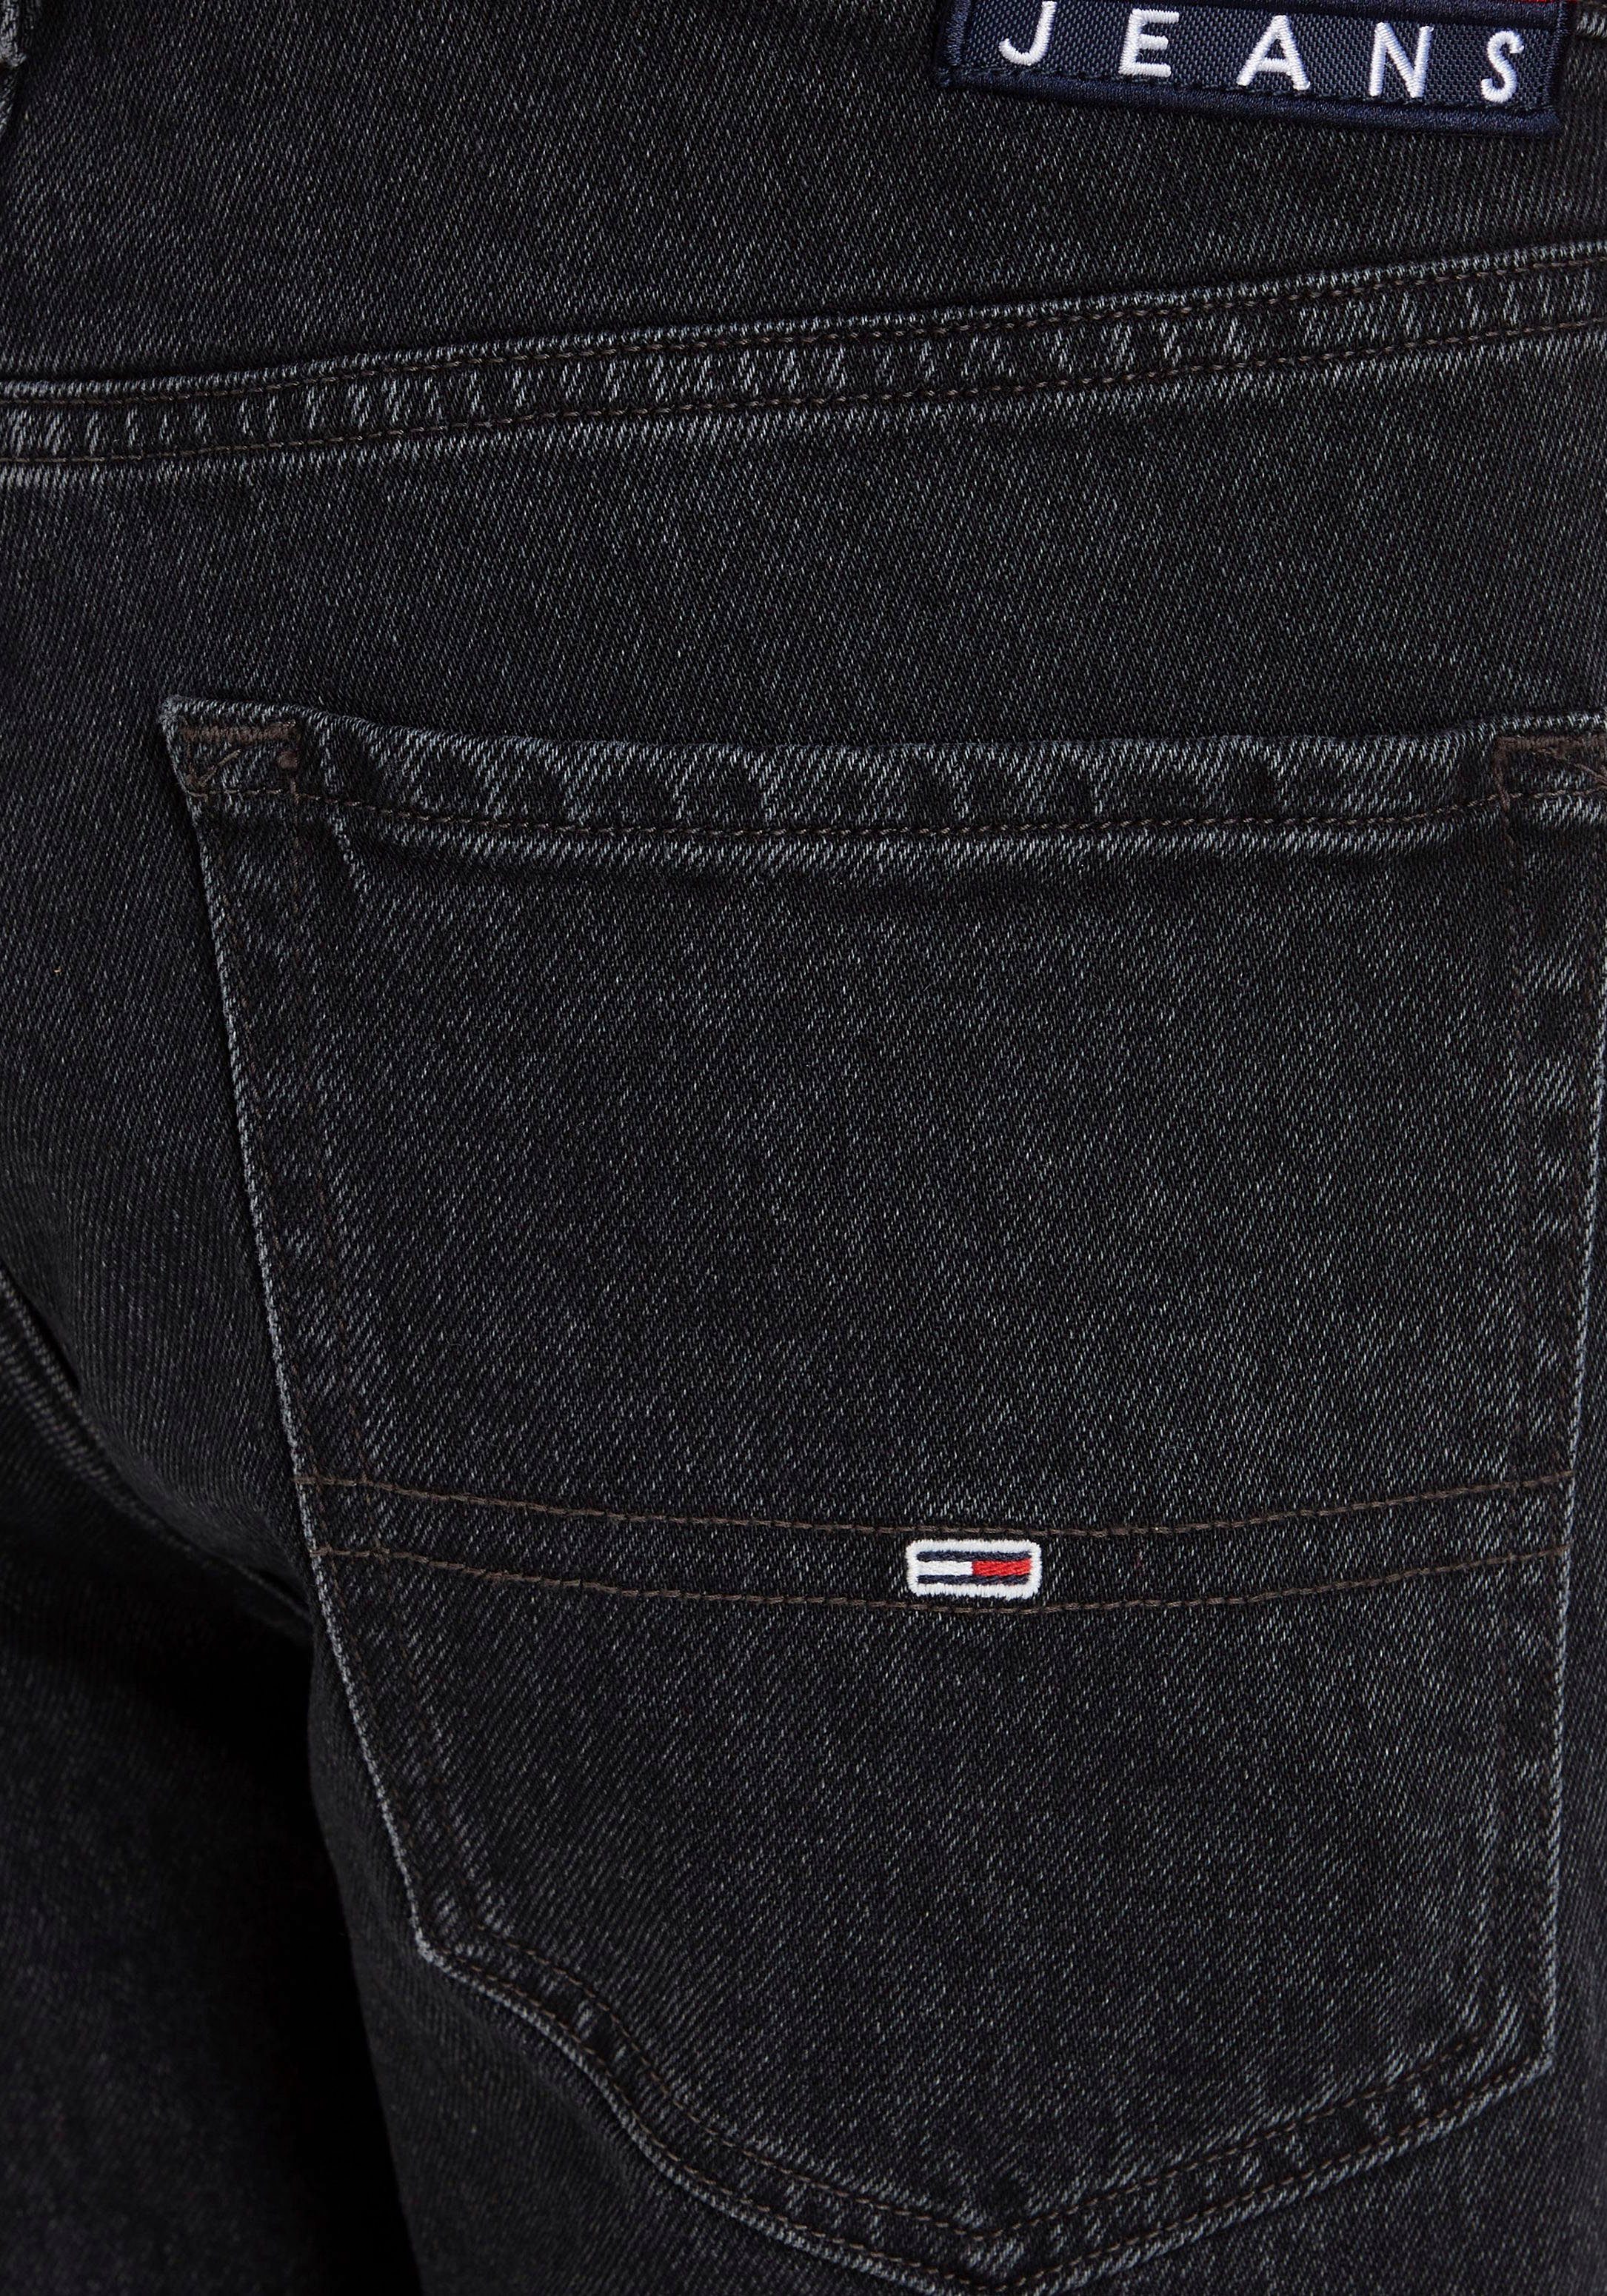 Black Jeans SLIM Tommy Denim Y SCANTON 5-Pocket-Jeans